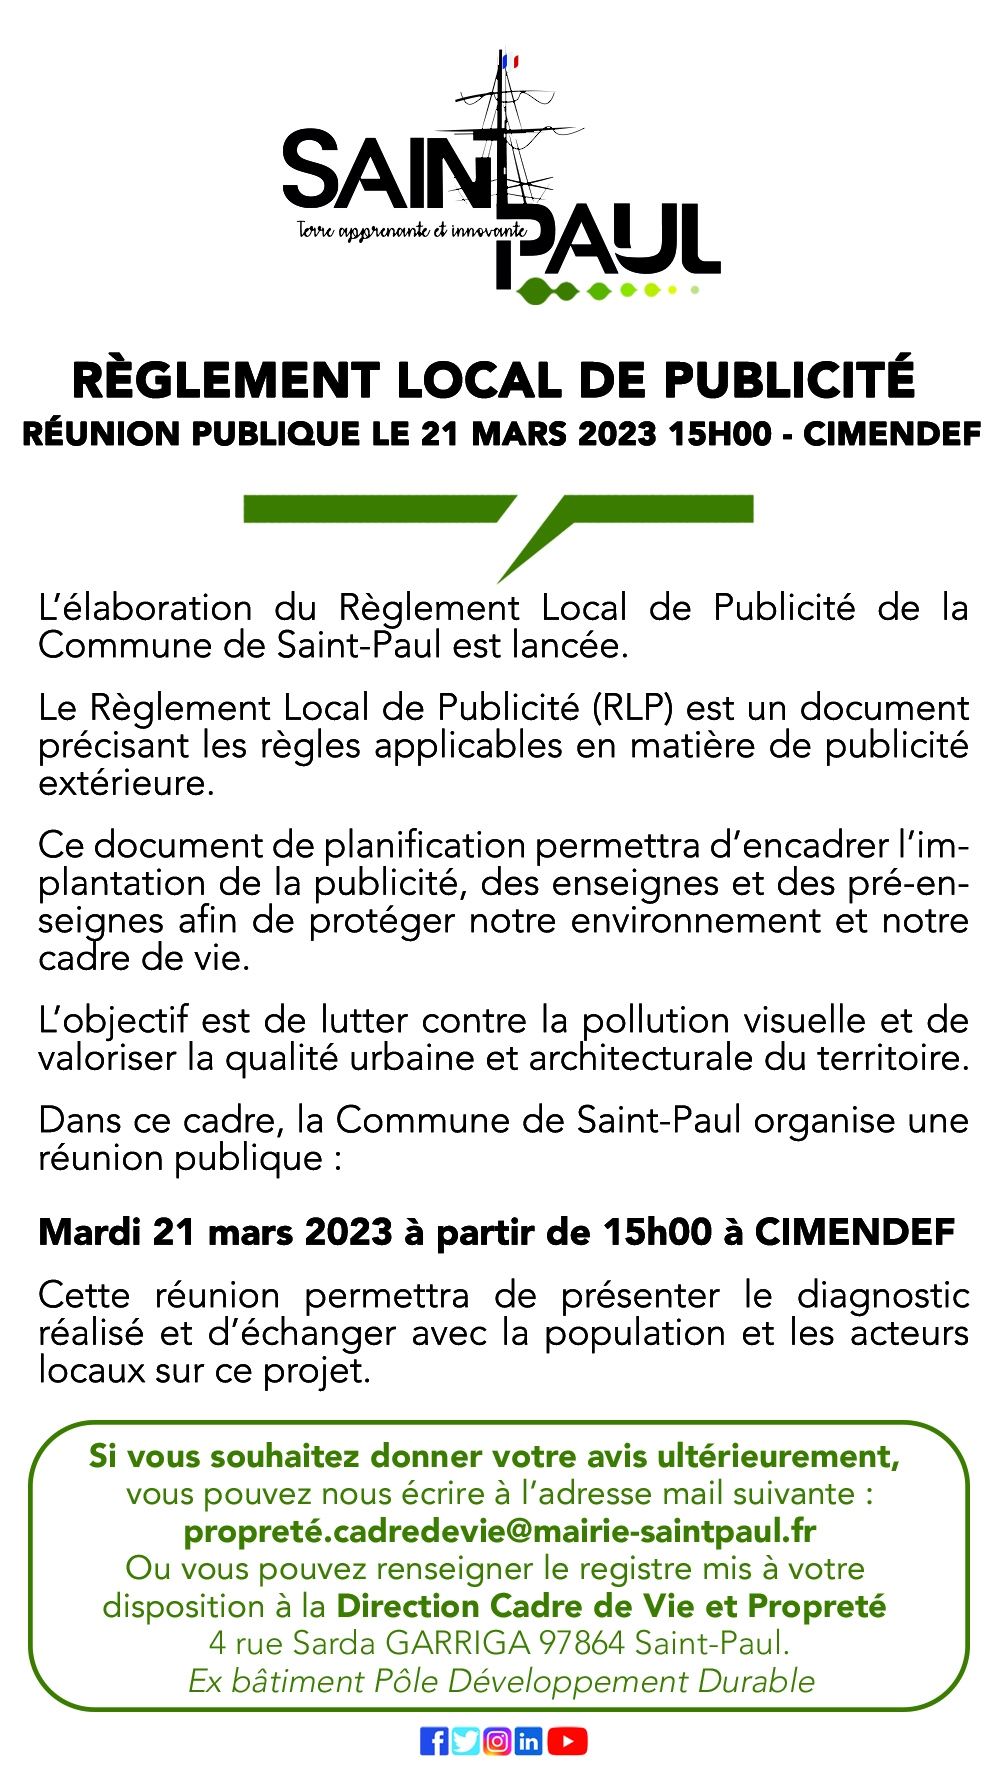 Règlement local de publicité, une réunion publique prévue le 21 mars 2023 à Cimendef